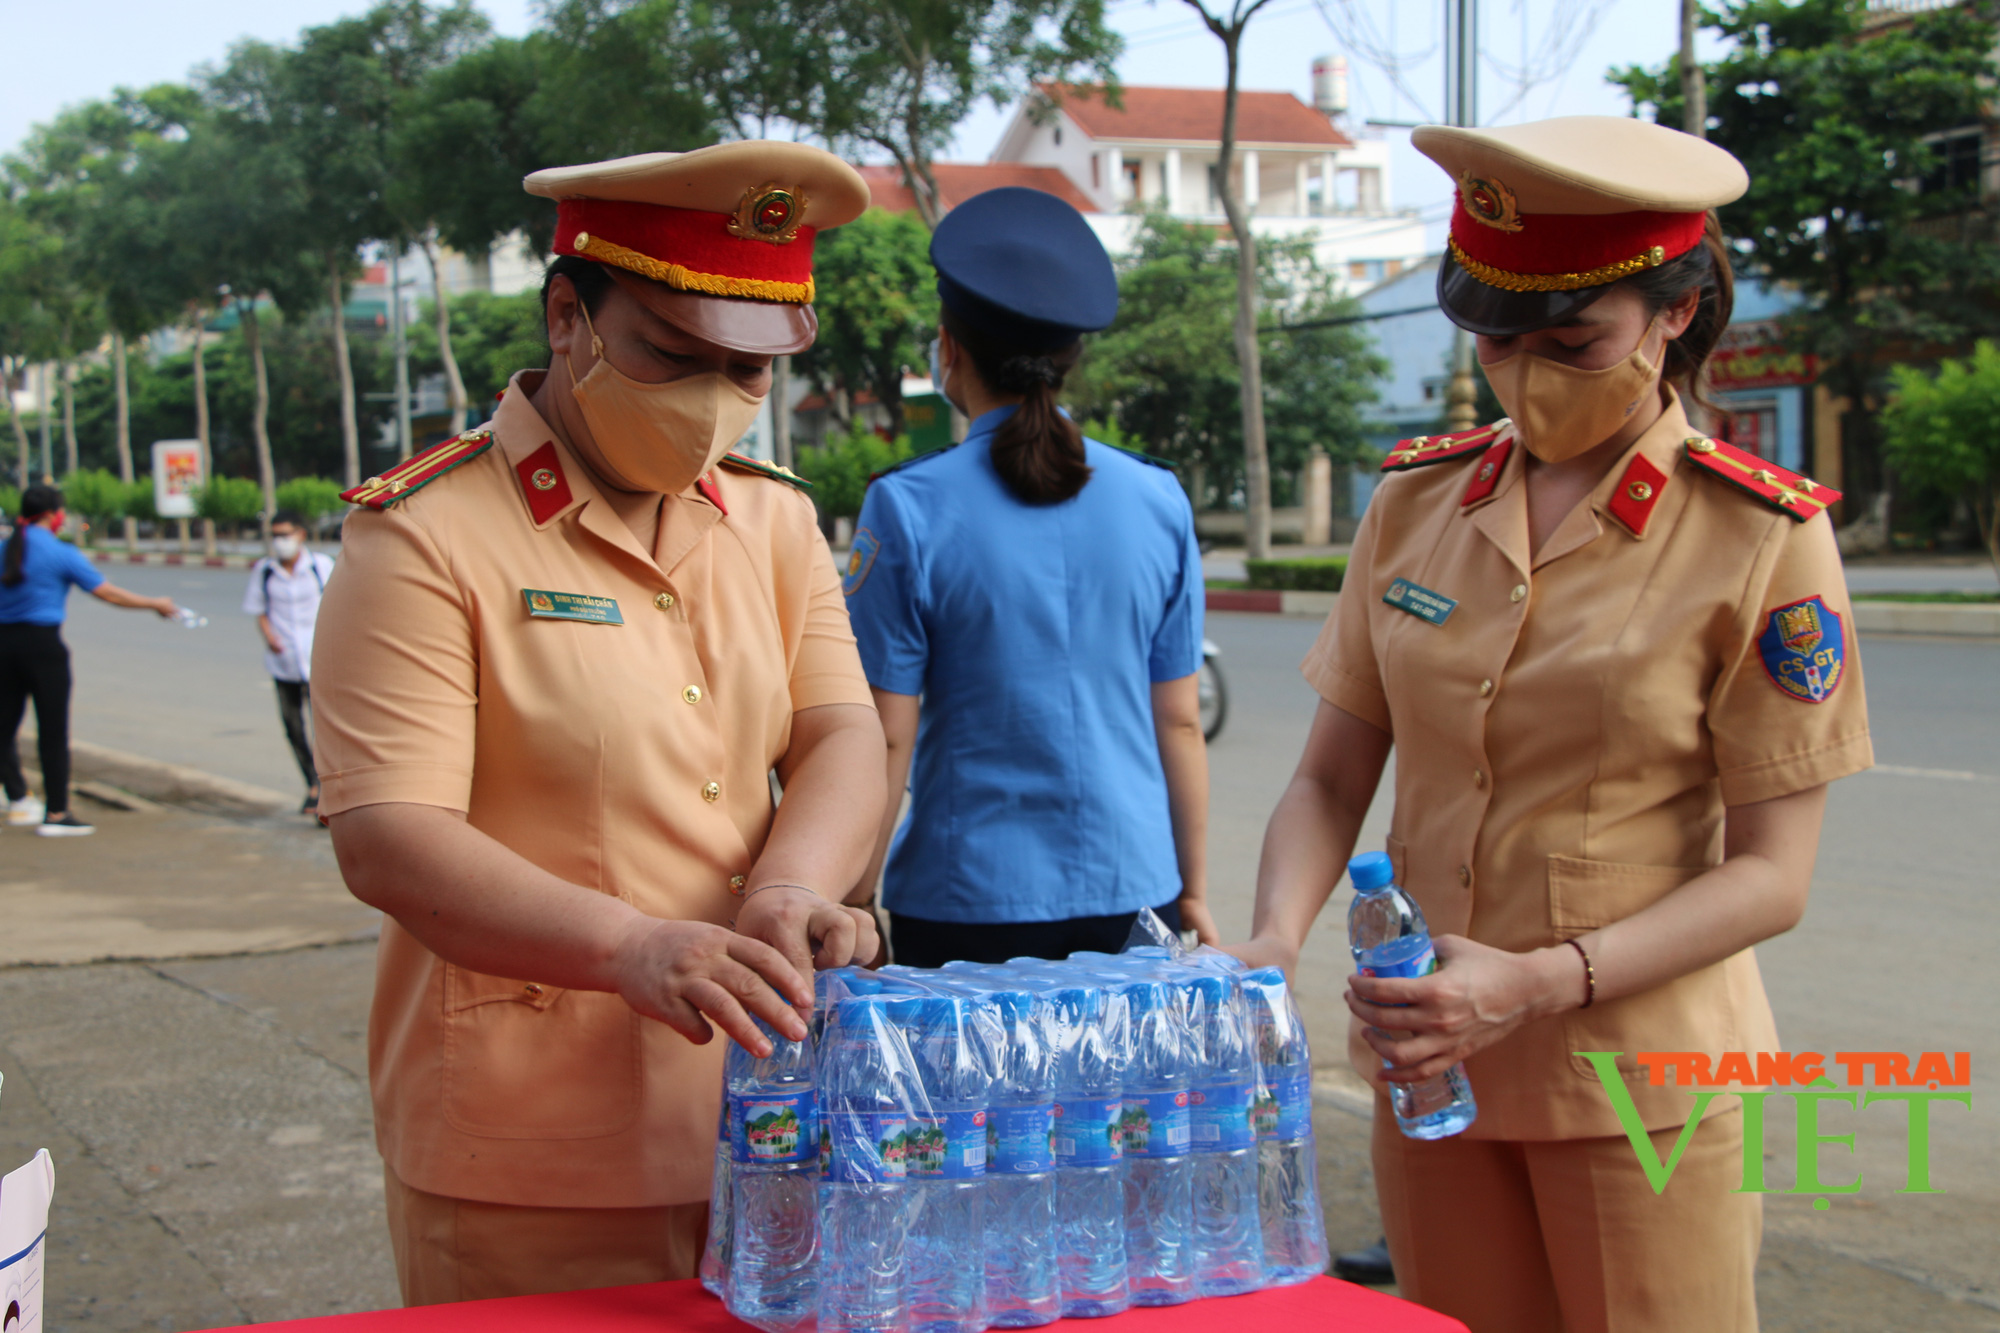 Chùm ảnh: Lực lượng cảnh sát giao thông phát nước lọc miễn phí, hỗ trợ các thí sinh thi tốt nghiệp THPT năm 2021 - Ảnh 3.